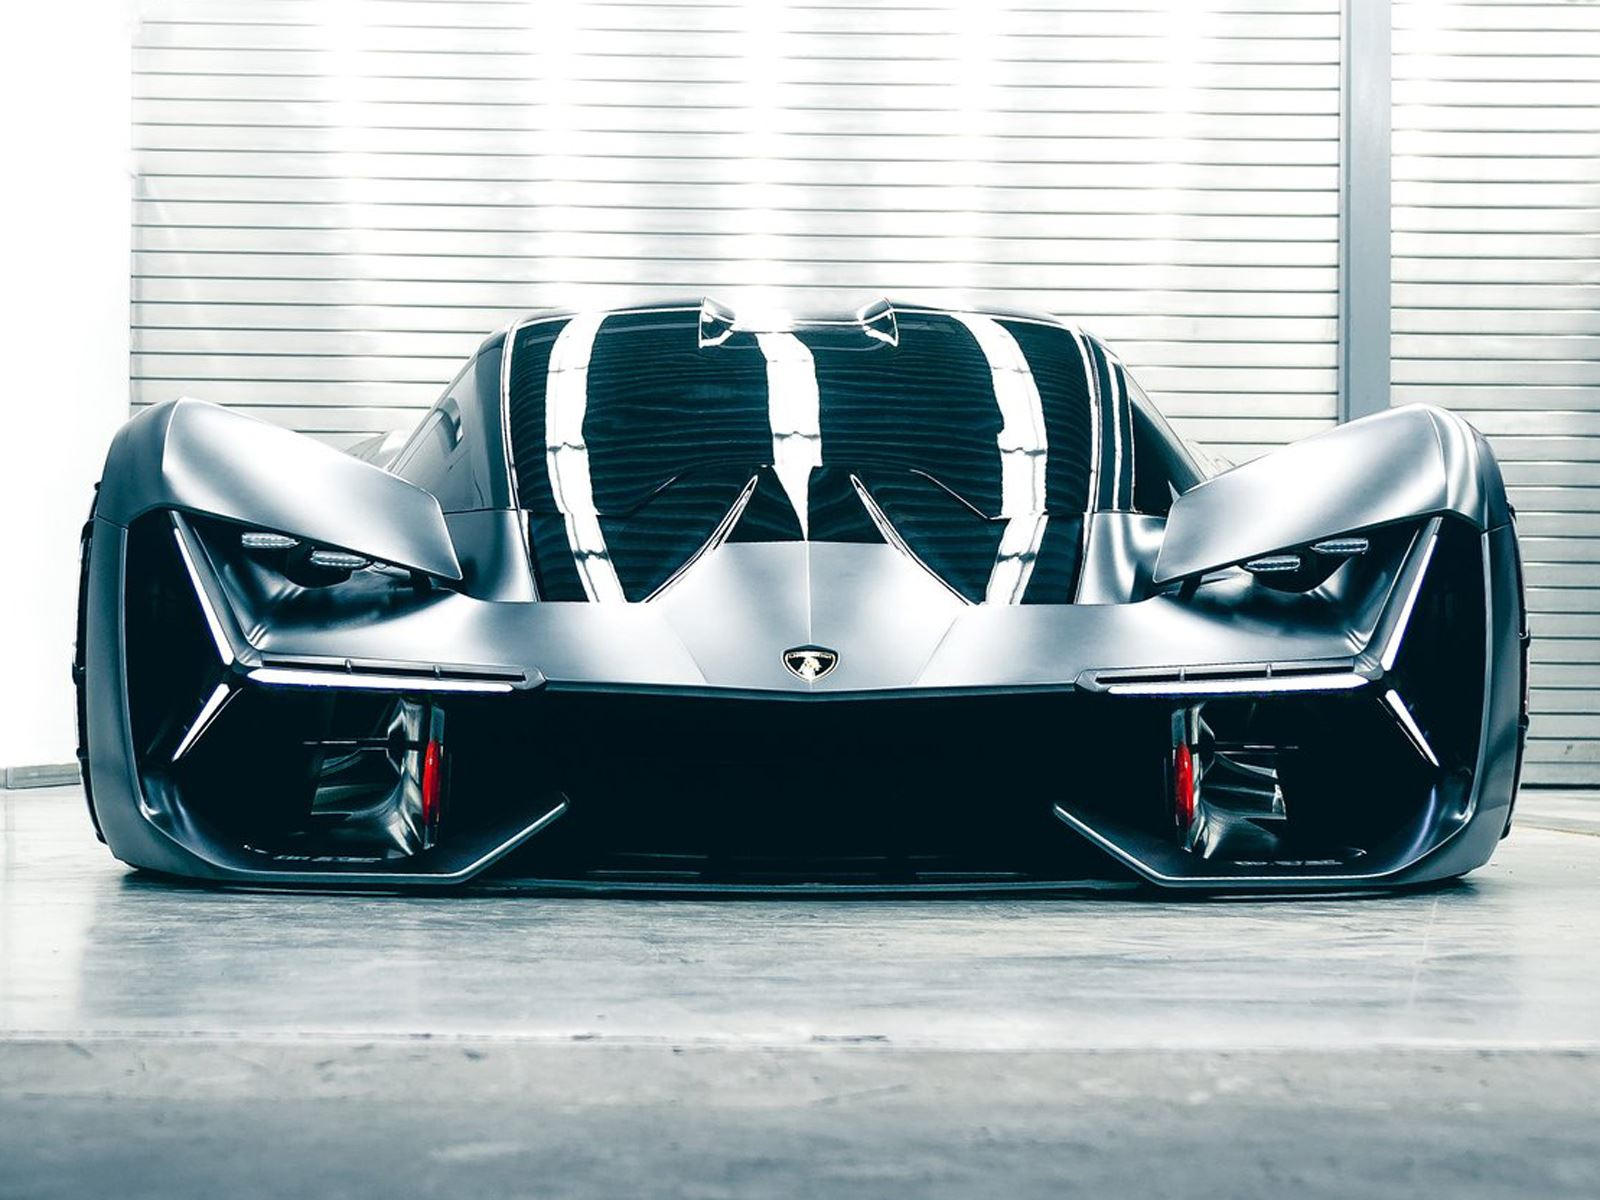 Несколько руководителей Lamborghini недавно отметились, заявив, что итальянская компания по производству суперкаров не намерена переходить от атмосферных двигателей V10 и V12 к турбированным V8. Однако для того, чтобы продолжить соблюдение санкционир